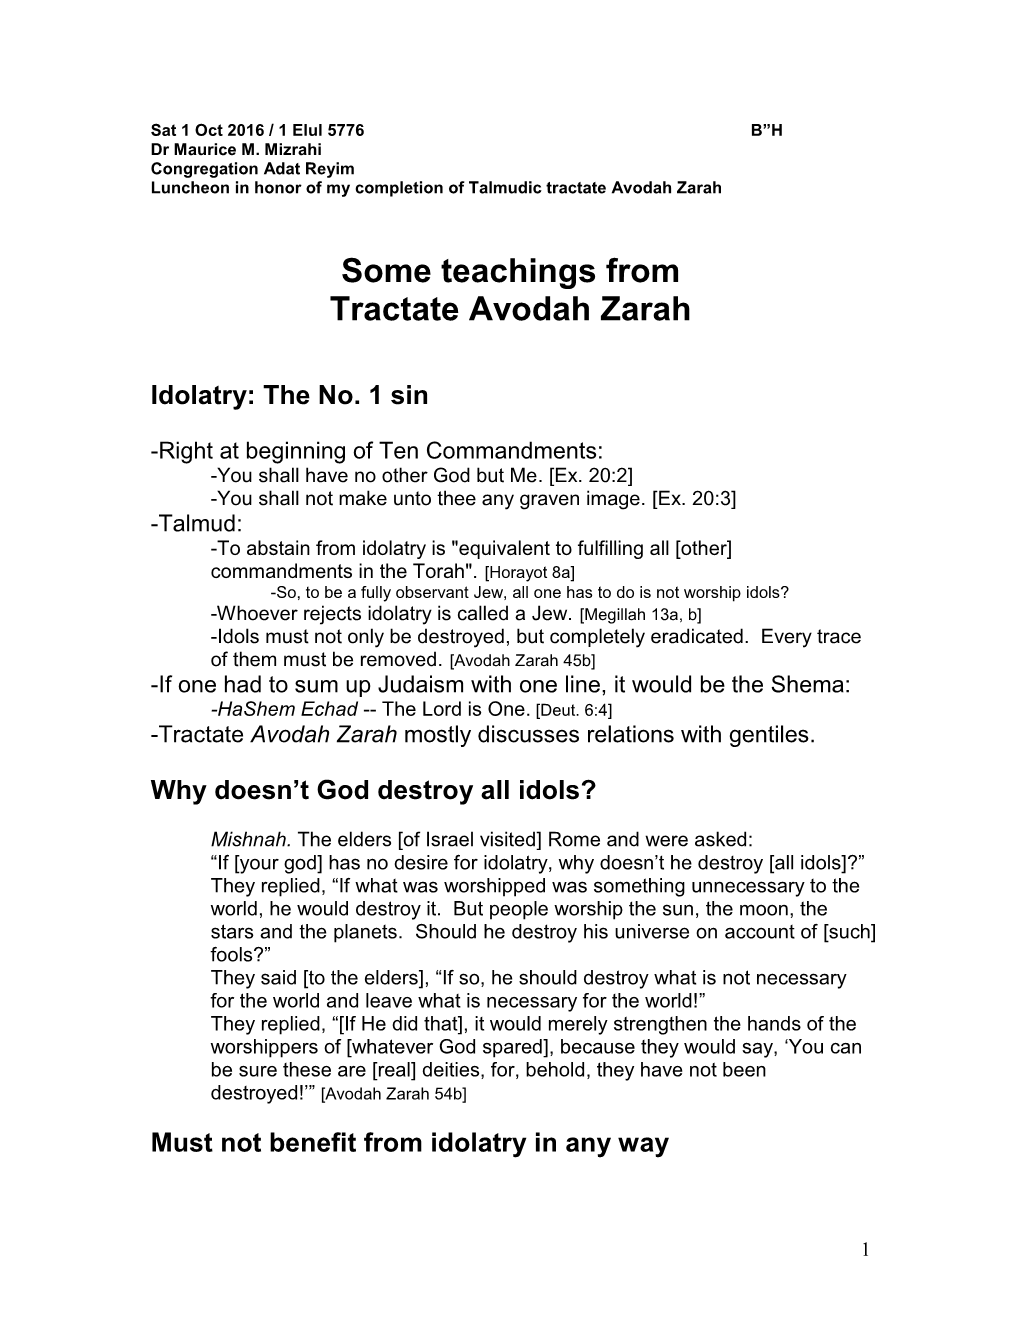 Some Teachings from Tractate Avodah Zarah